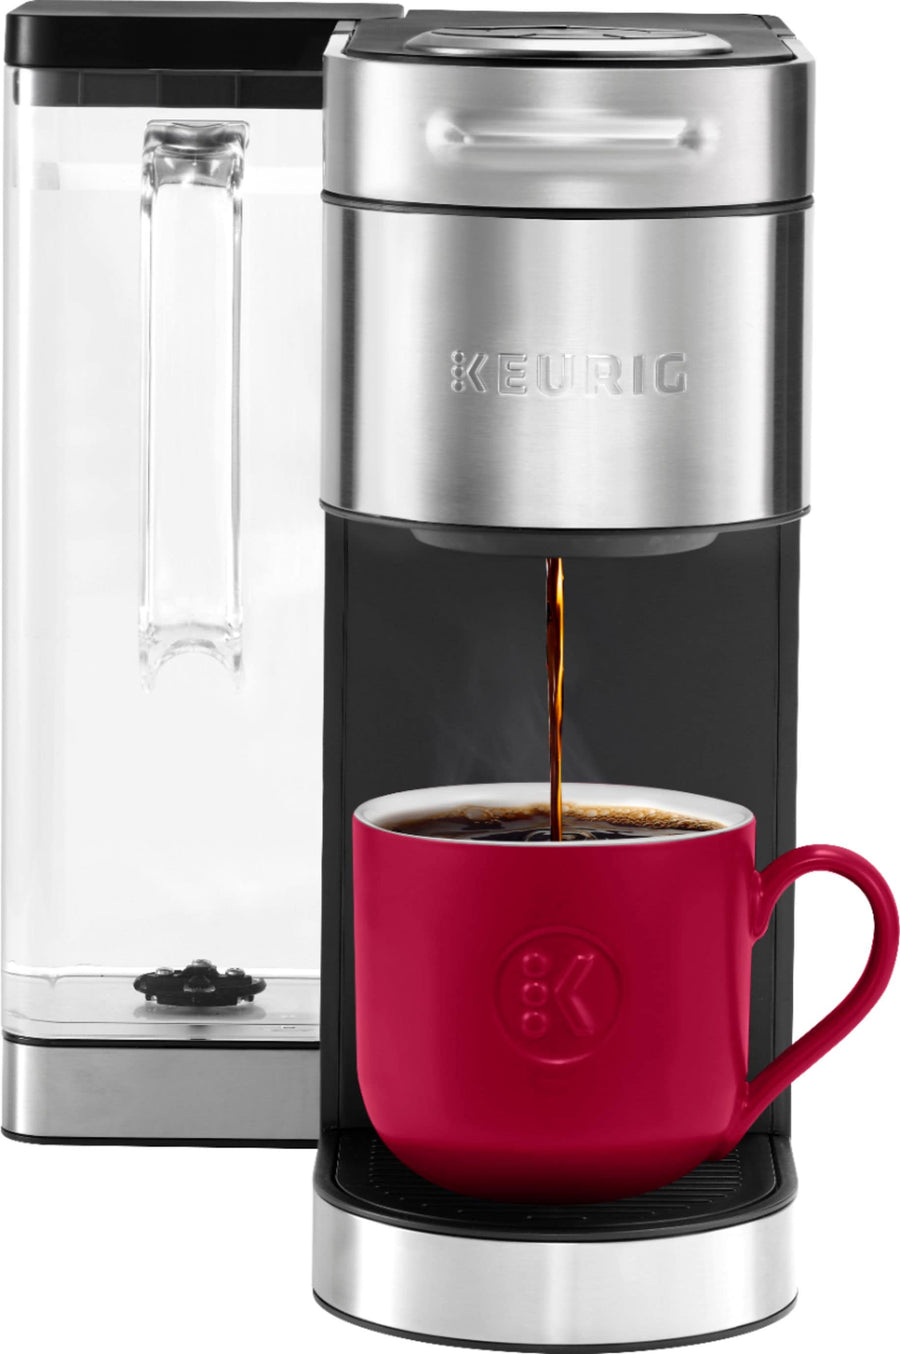 Keurig - K-Supreme Plus Coffee Maker - Stainless Steel_0